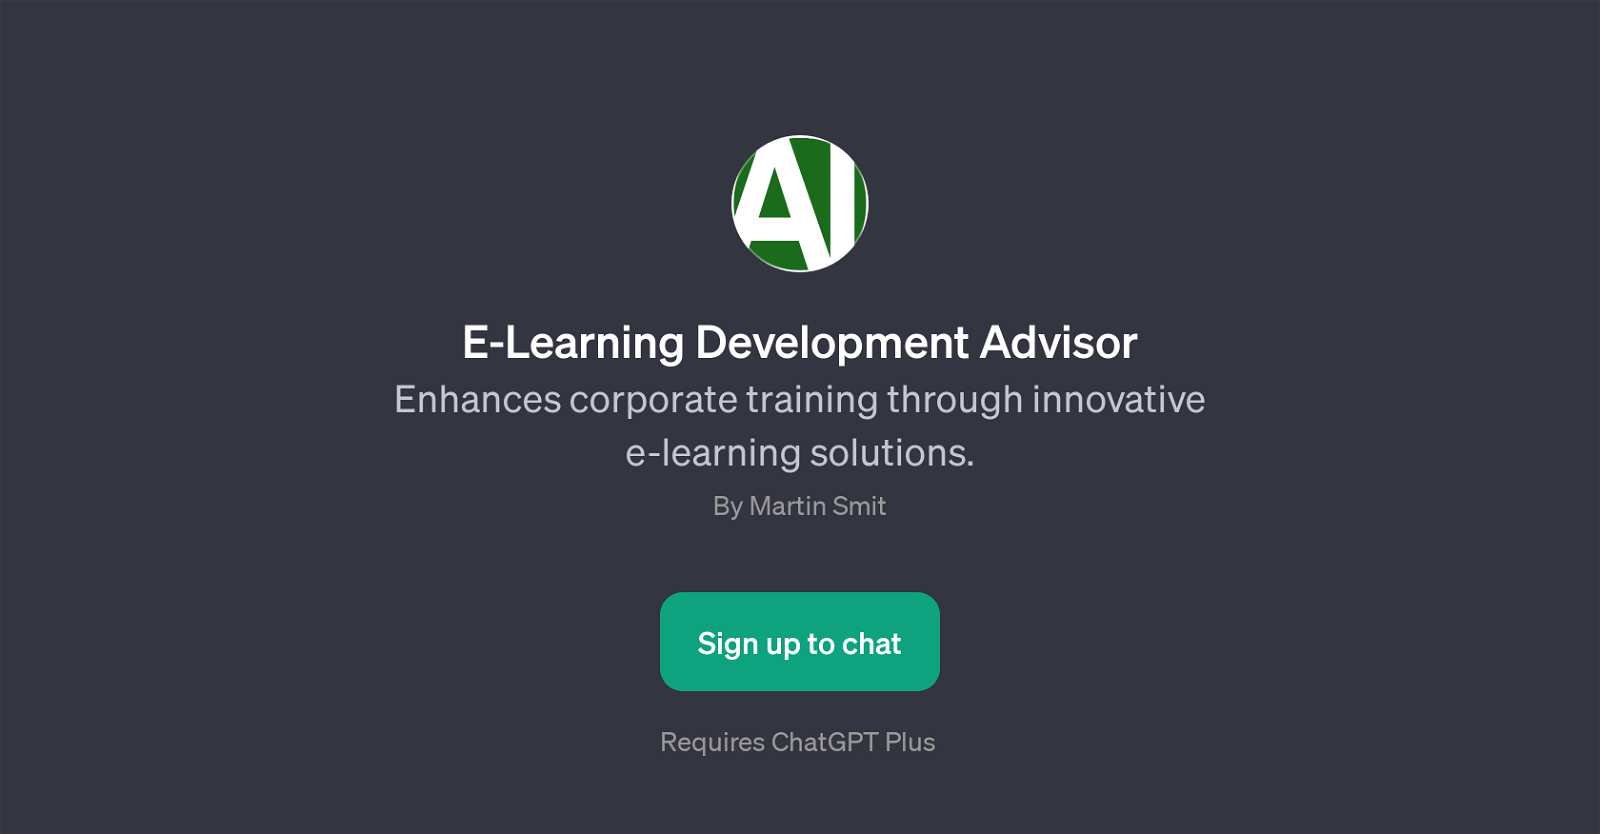 E-Learning Development Advisor website